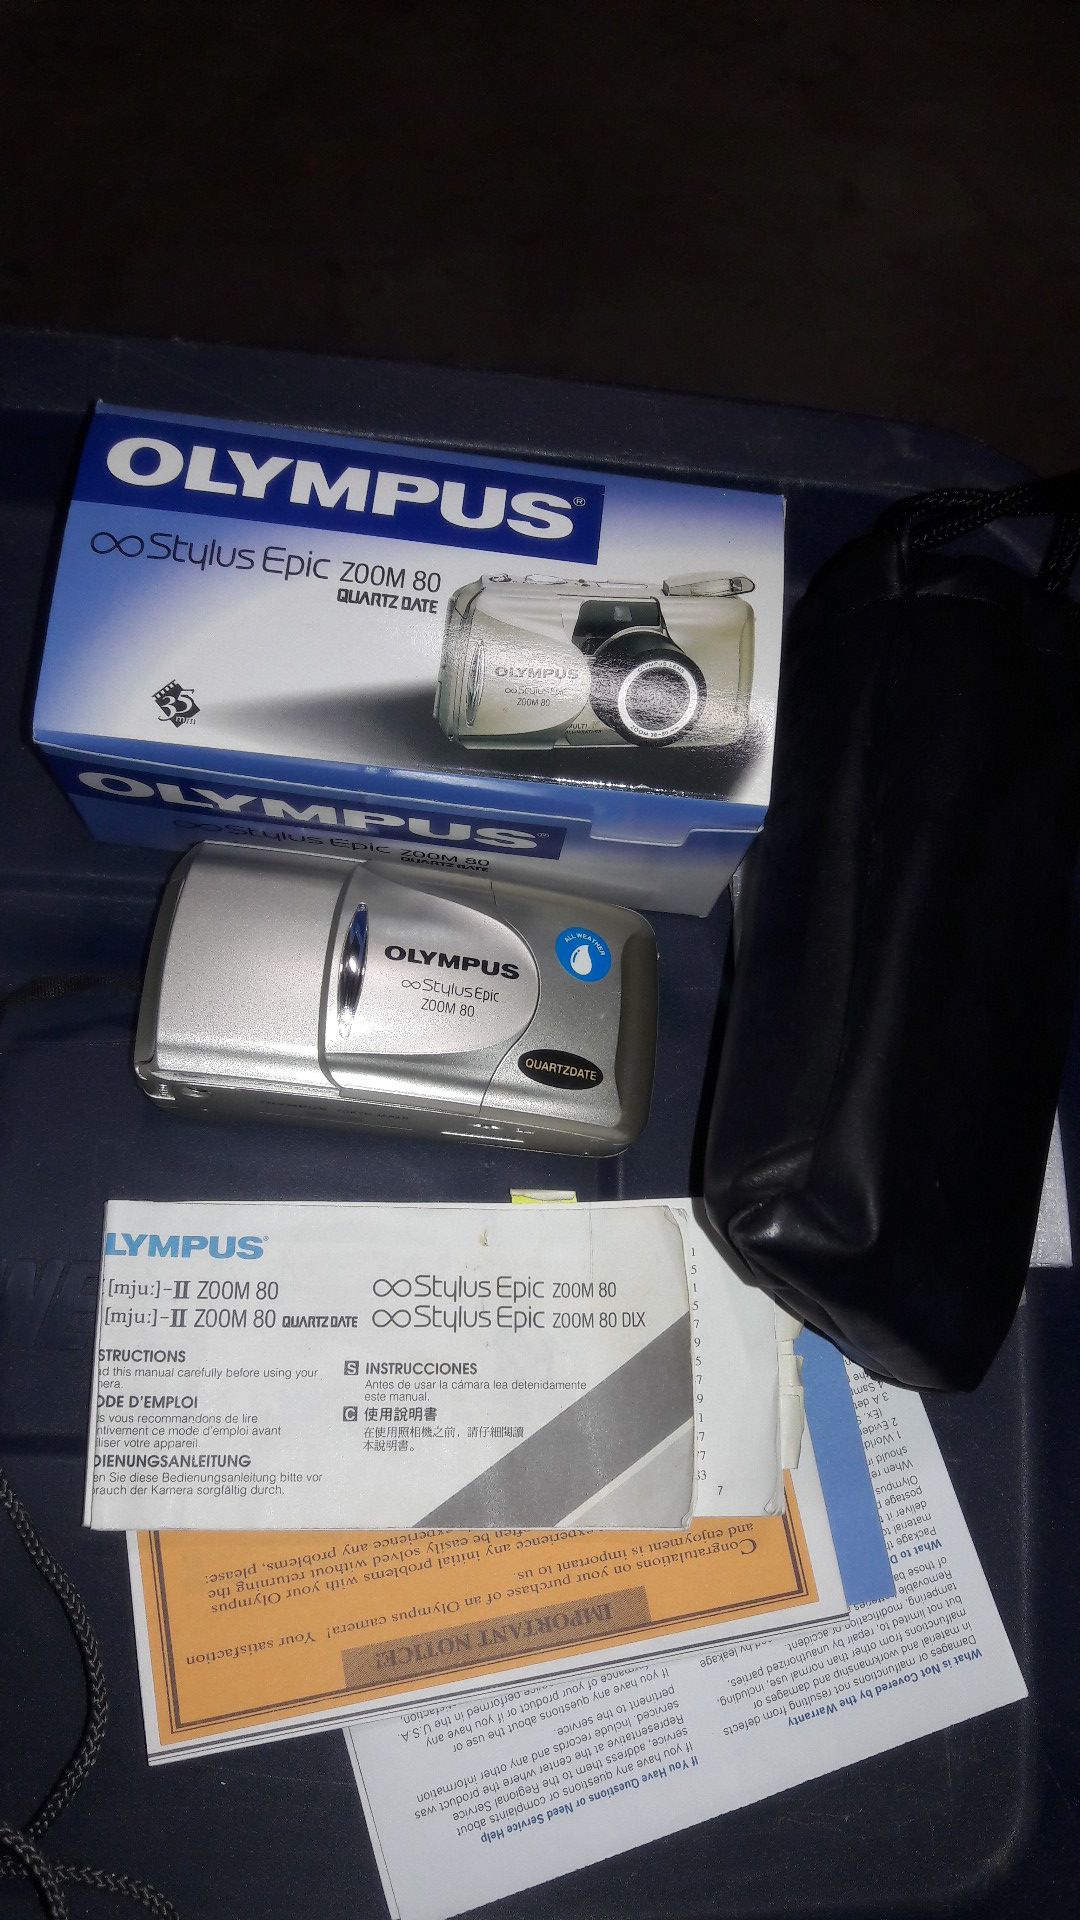 olympus stylus epic zoom 80 digital camera quartz date